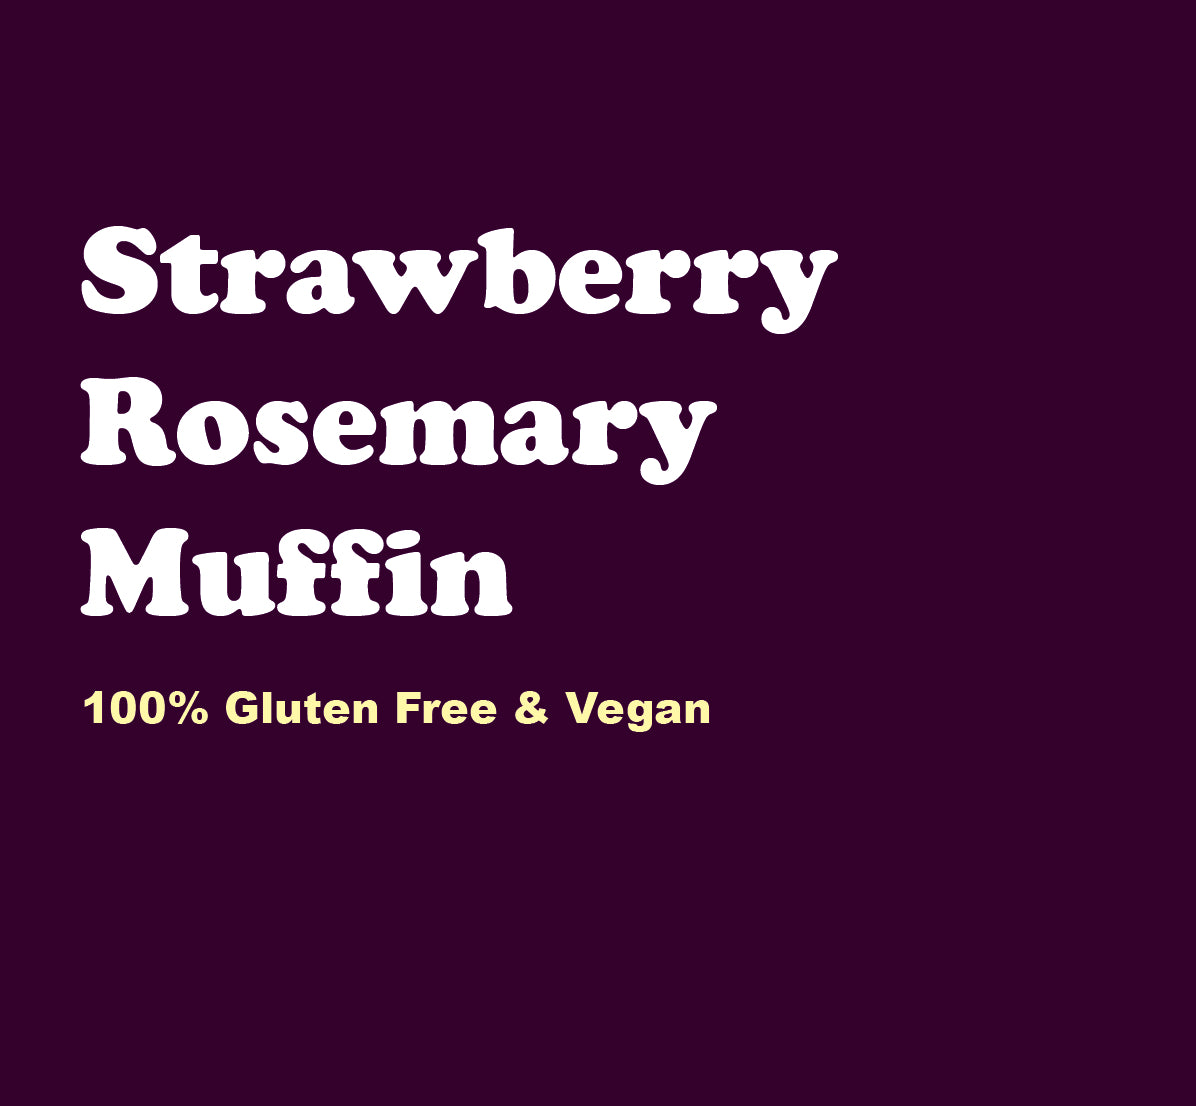 Strawberry Rosemary Muffin